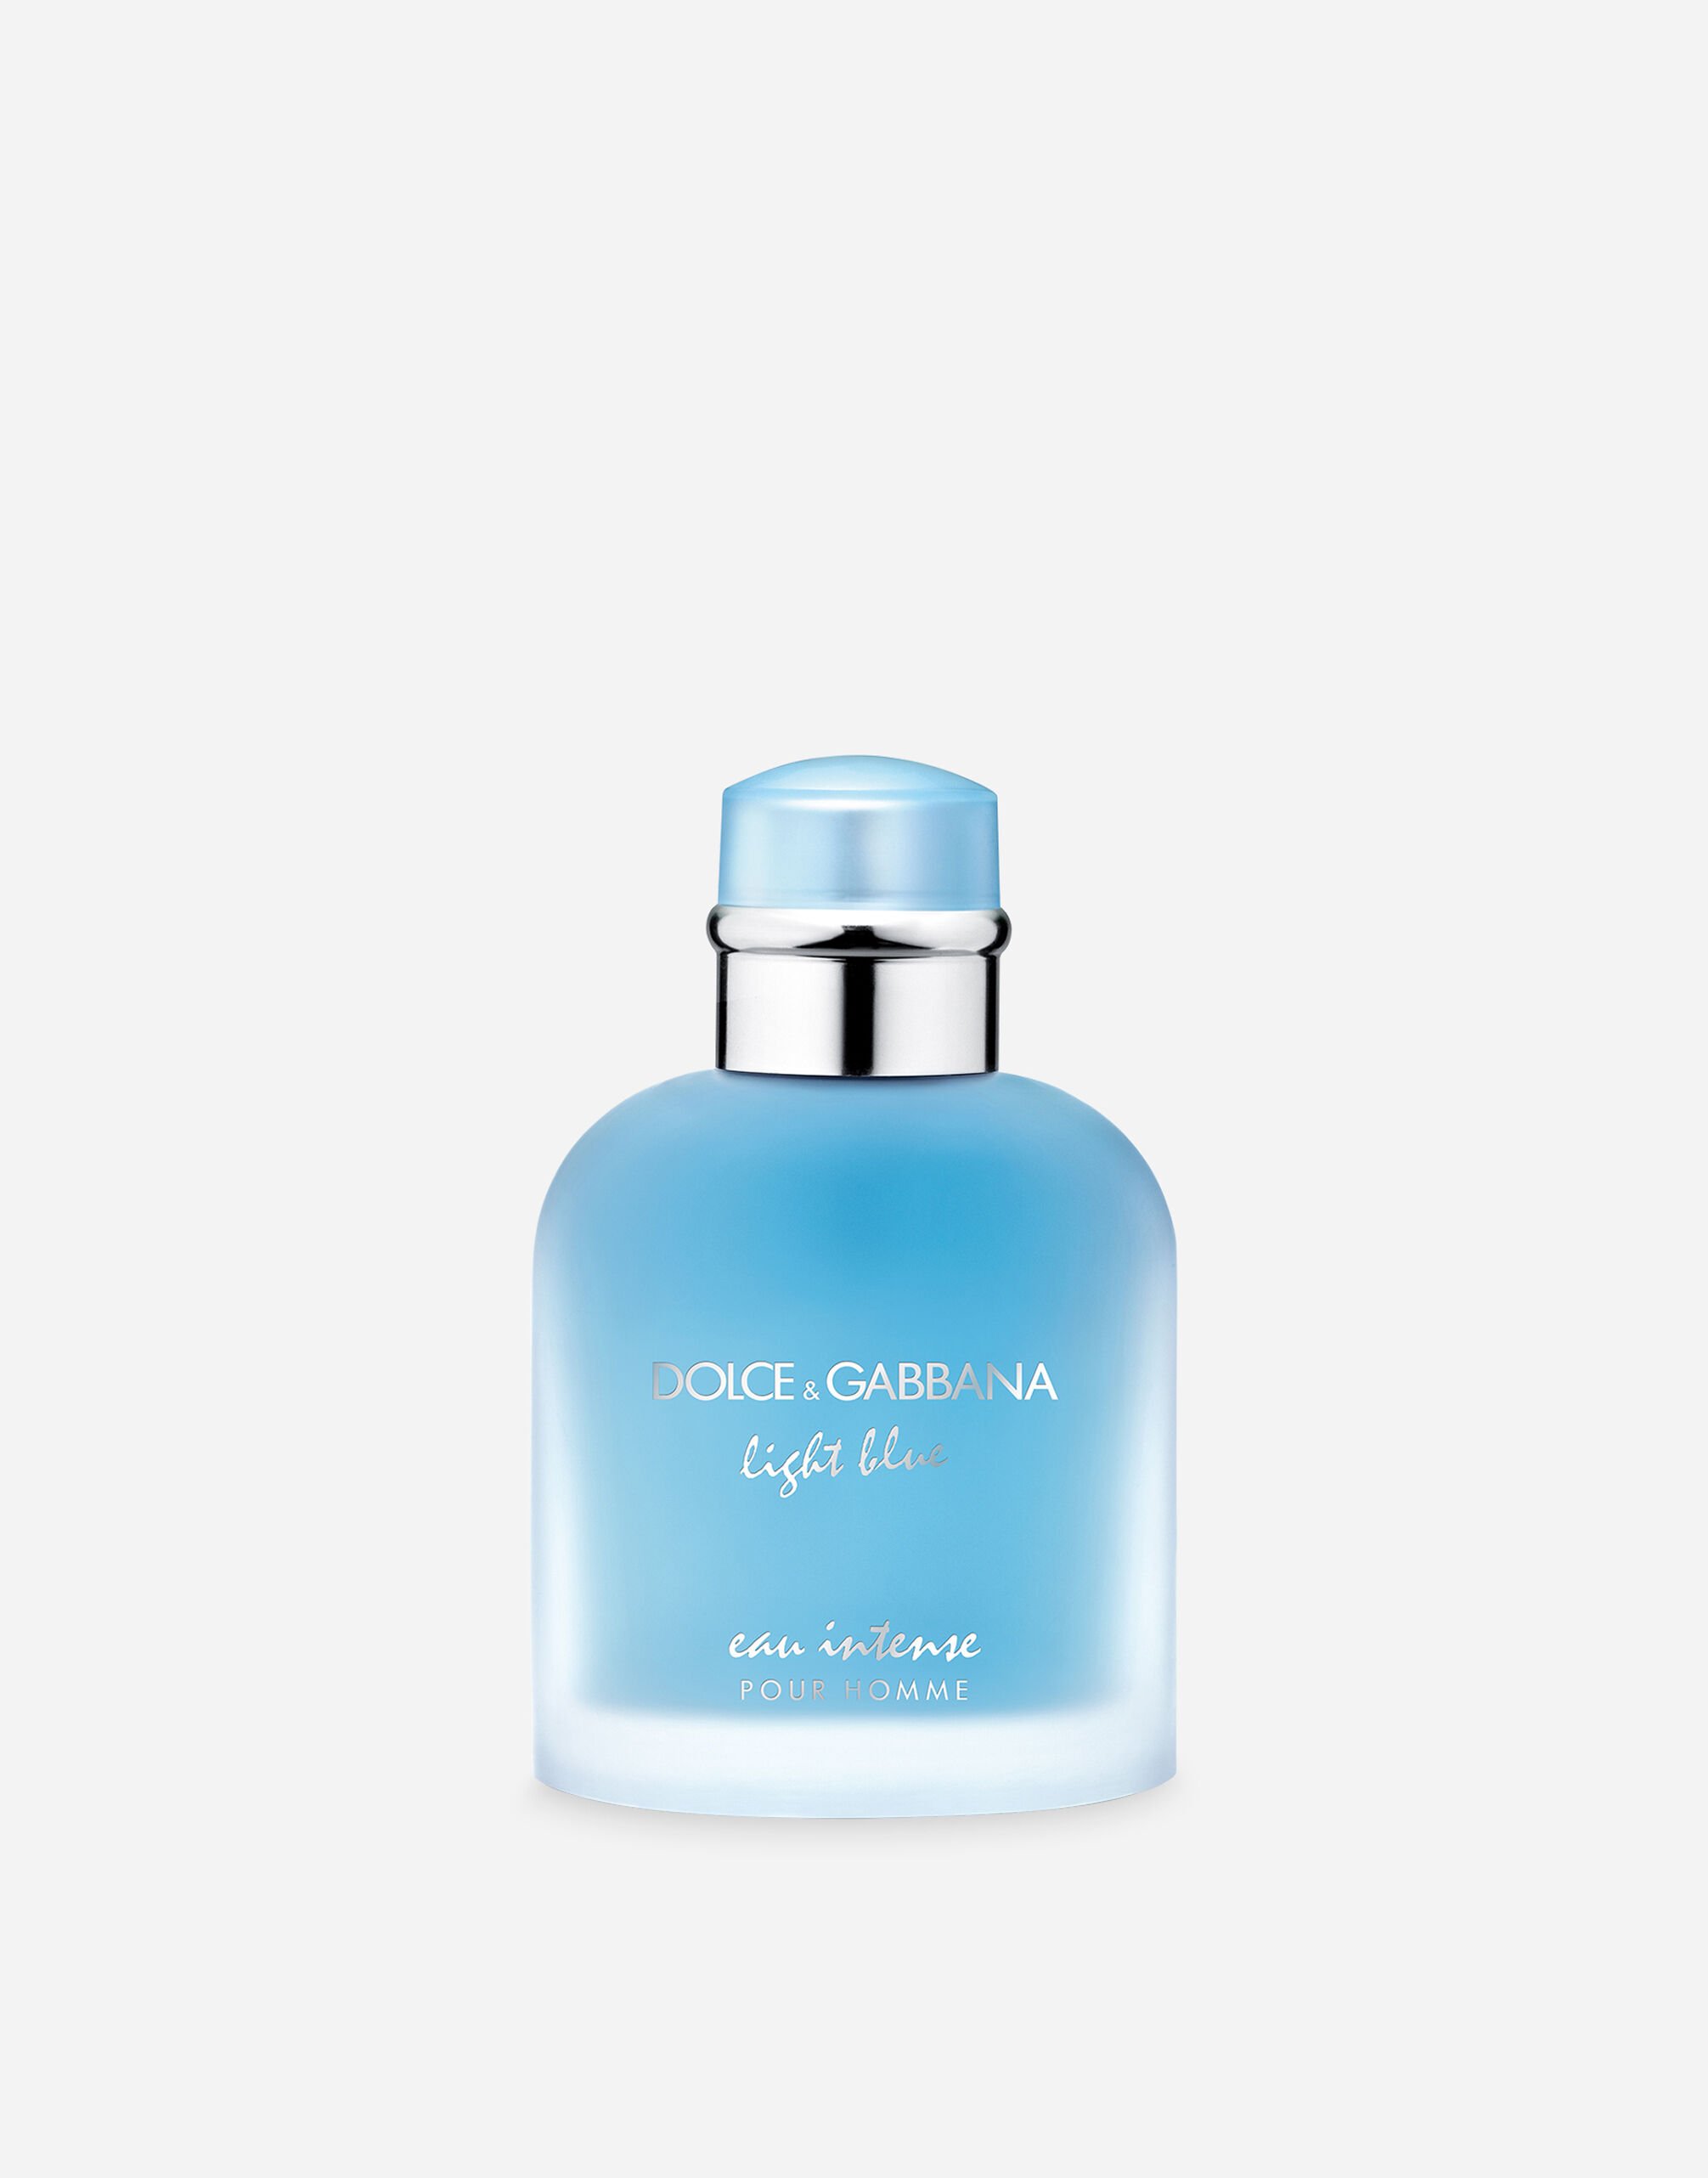 Dolce & Gabbana Light Blue Pour Homme Eau de Parfum Intense - VT00KBVT000